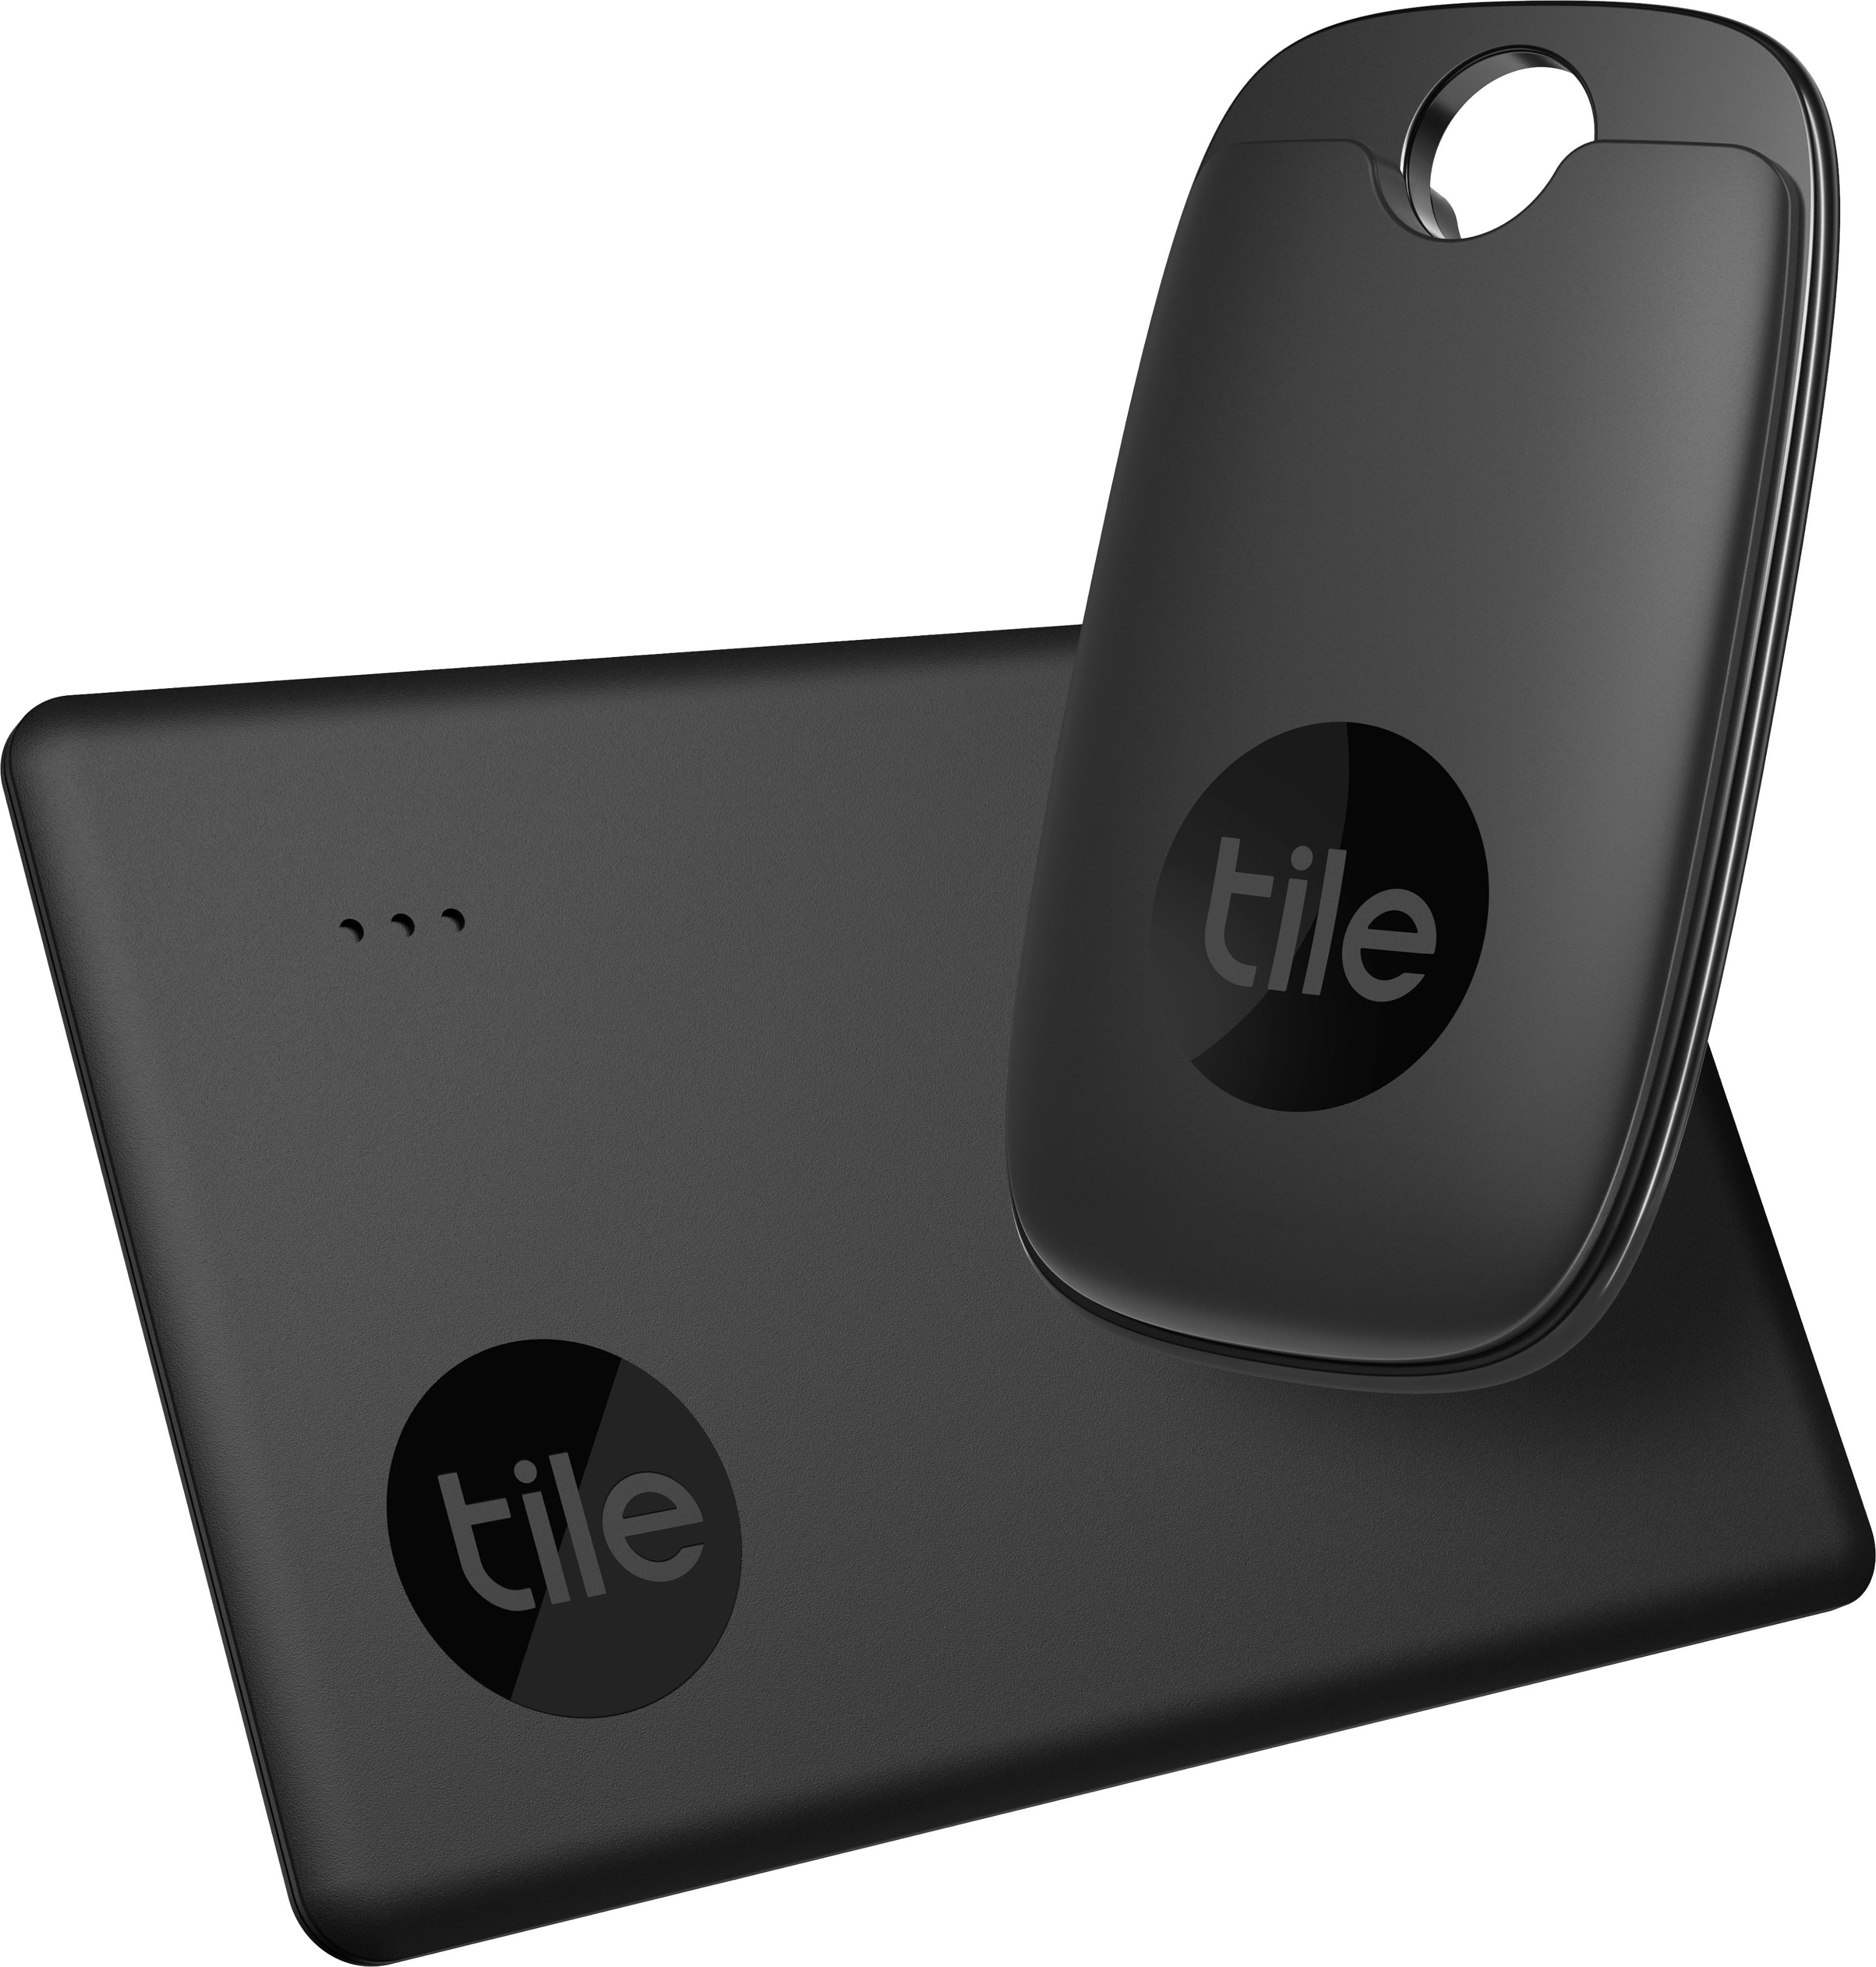 Tile Performance Pack (2022) 2 Pack (1 Pro, 1 Slim)- Bluetooth Tracker,  Item Locator & Finder for Keys, Wallets & More Black RE-48002 - Best Buy